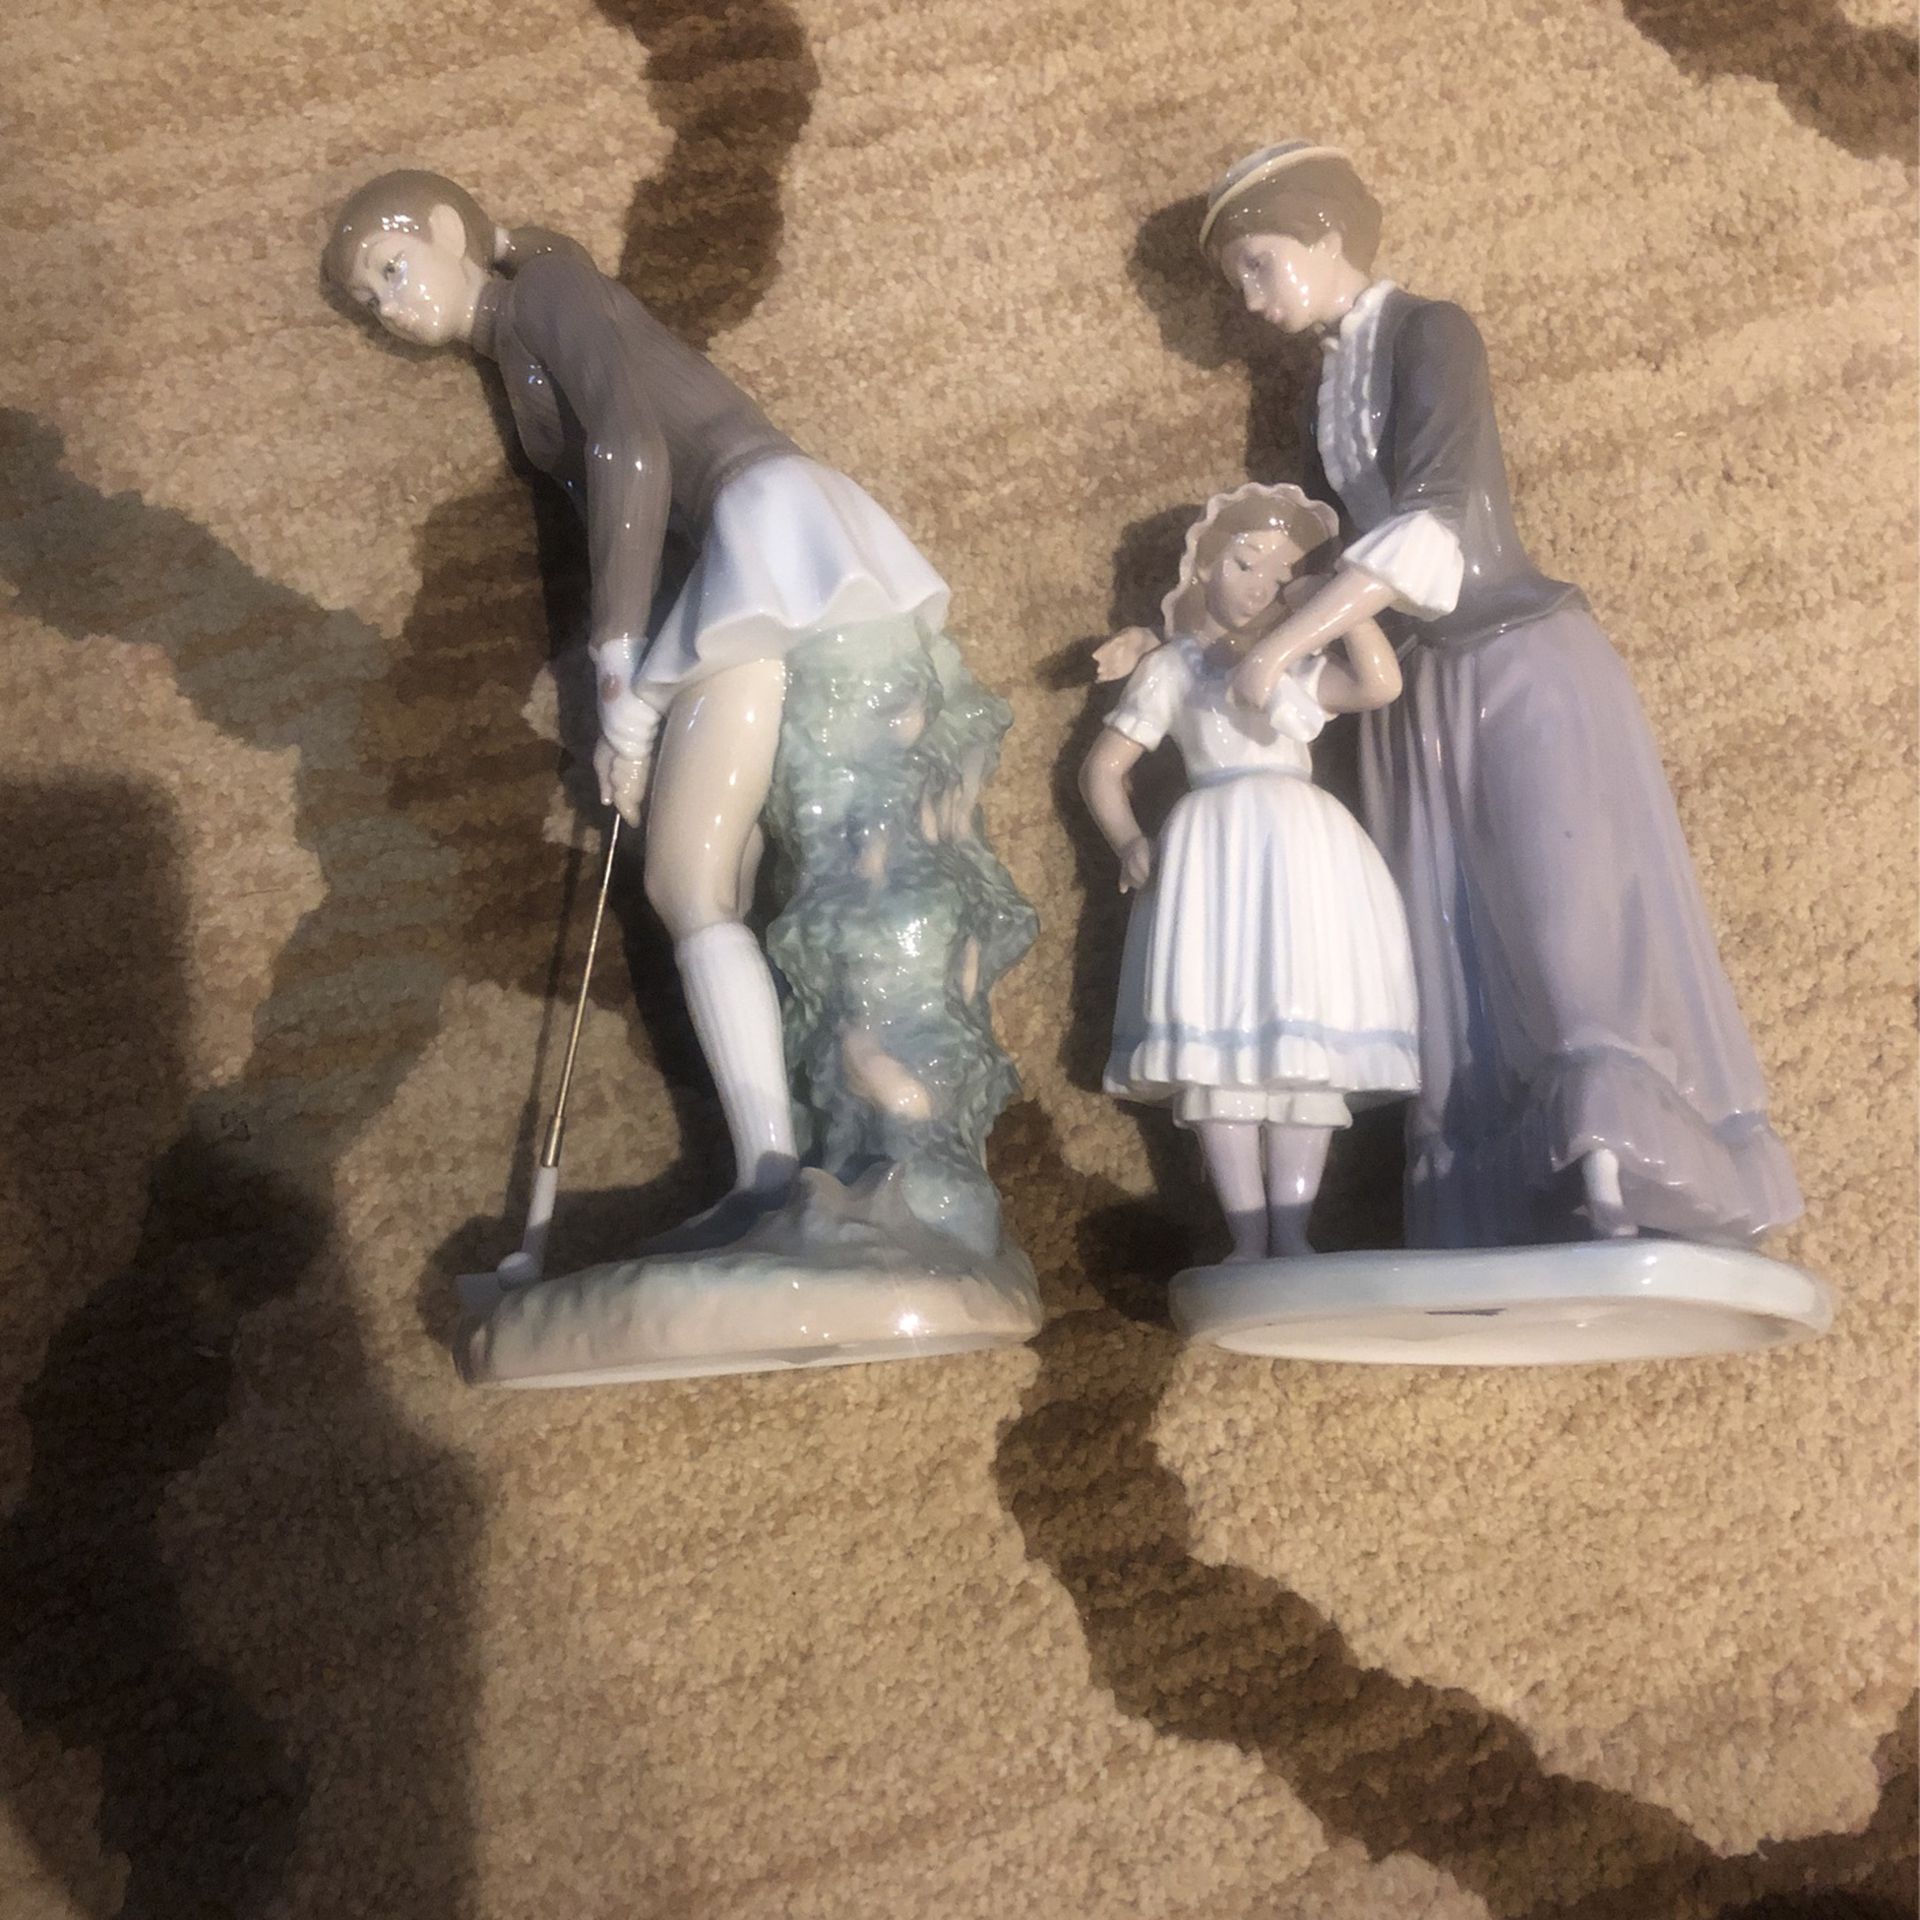 2 Vintage Lladro Collectible Figurines 